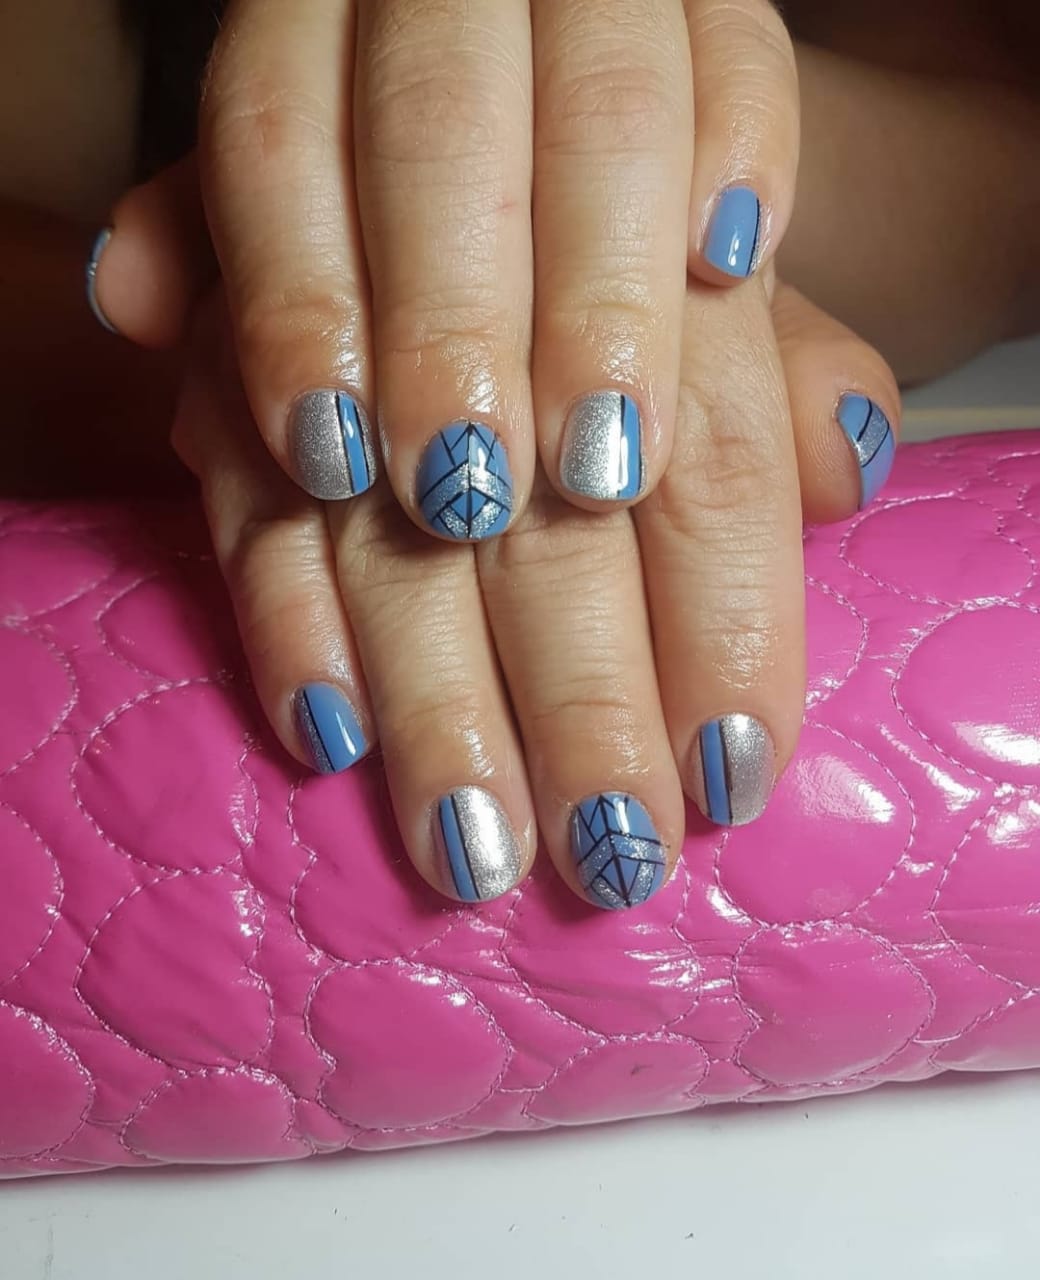 Uñas acrílicas esculpidas - Manicura - Lady Nails | Manicurista en San  Bernardo